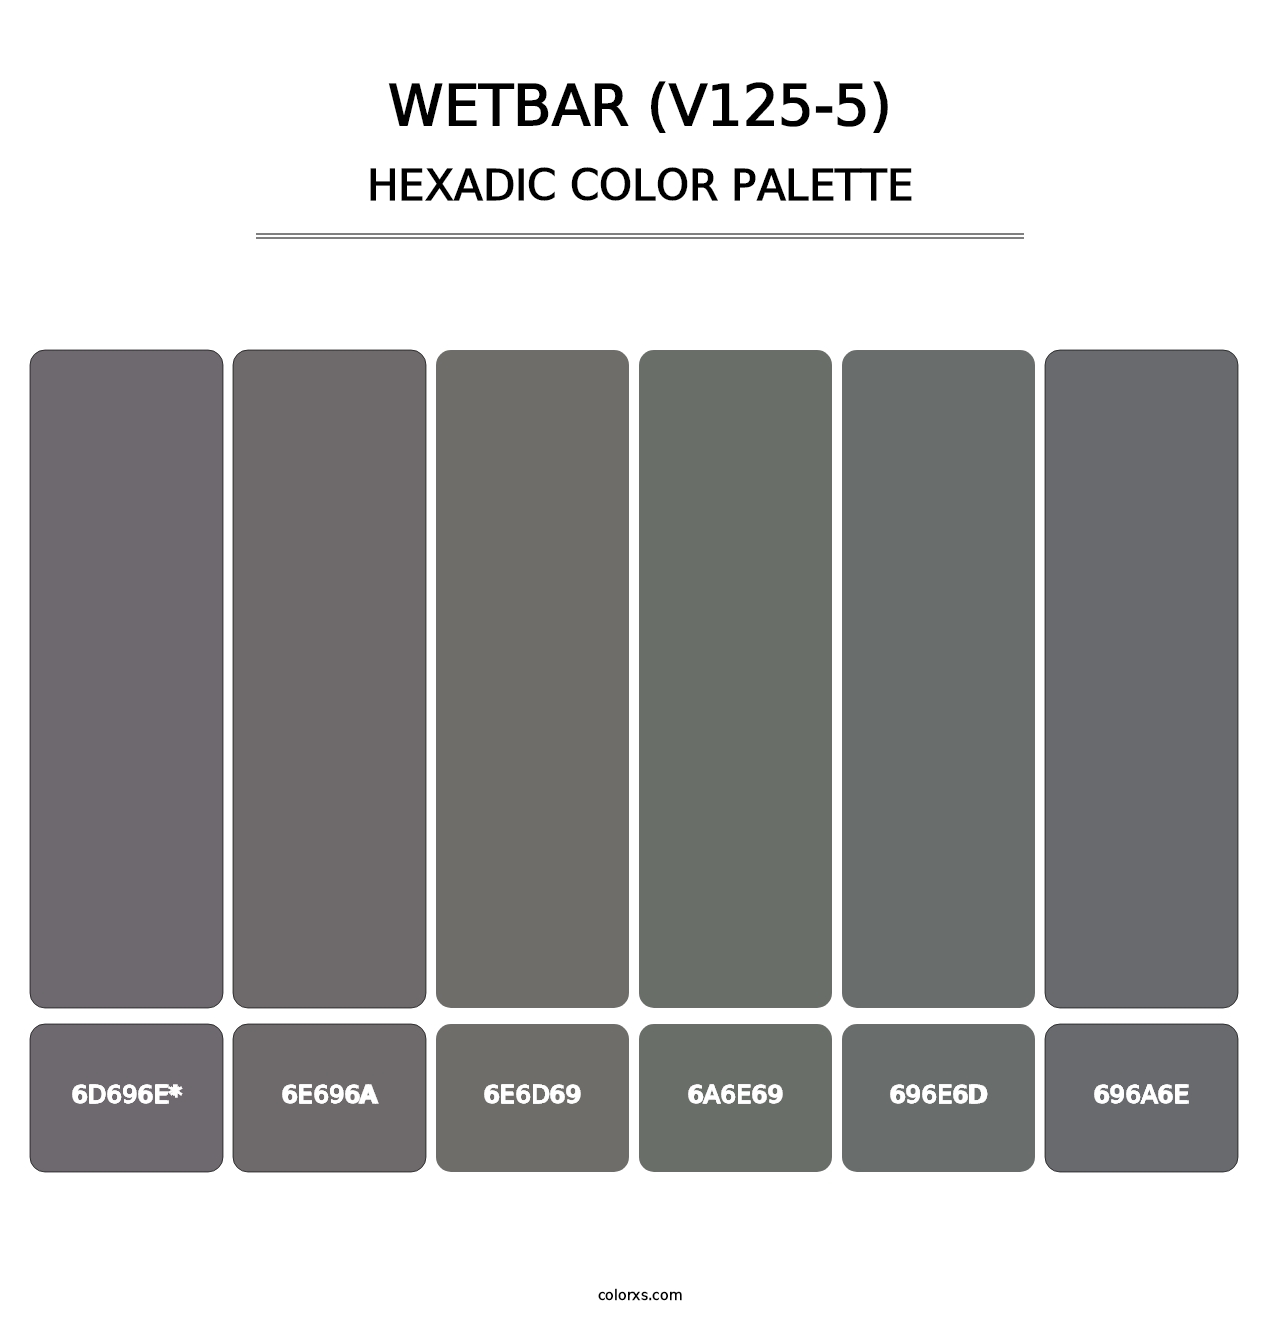 Wetbar (V125-5) - Hexadic Color Palette